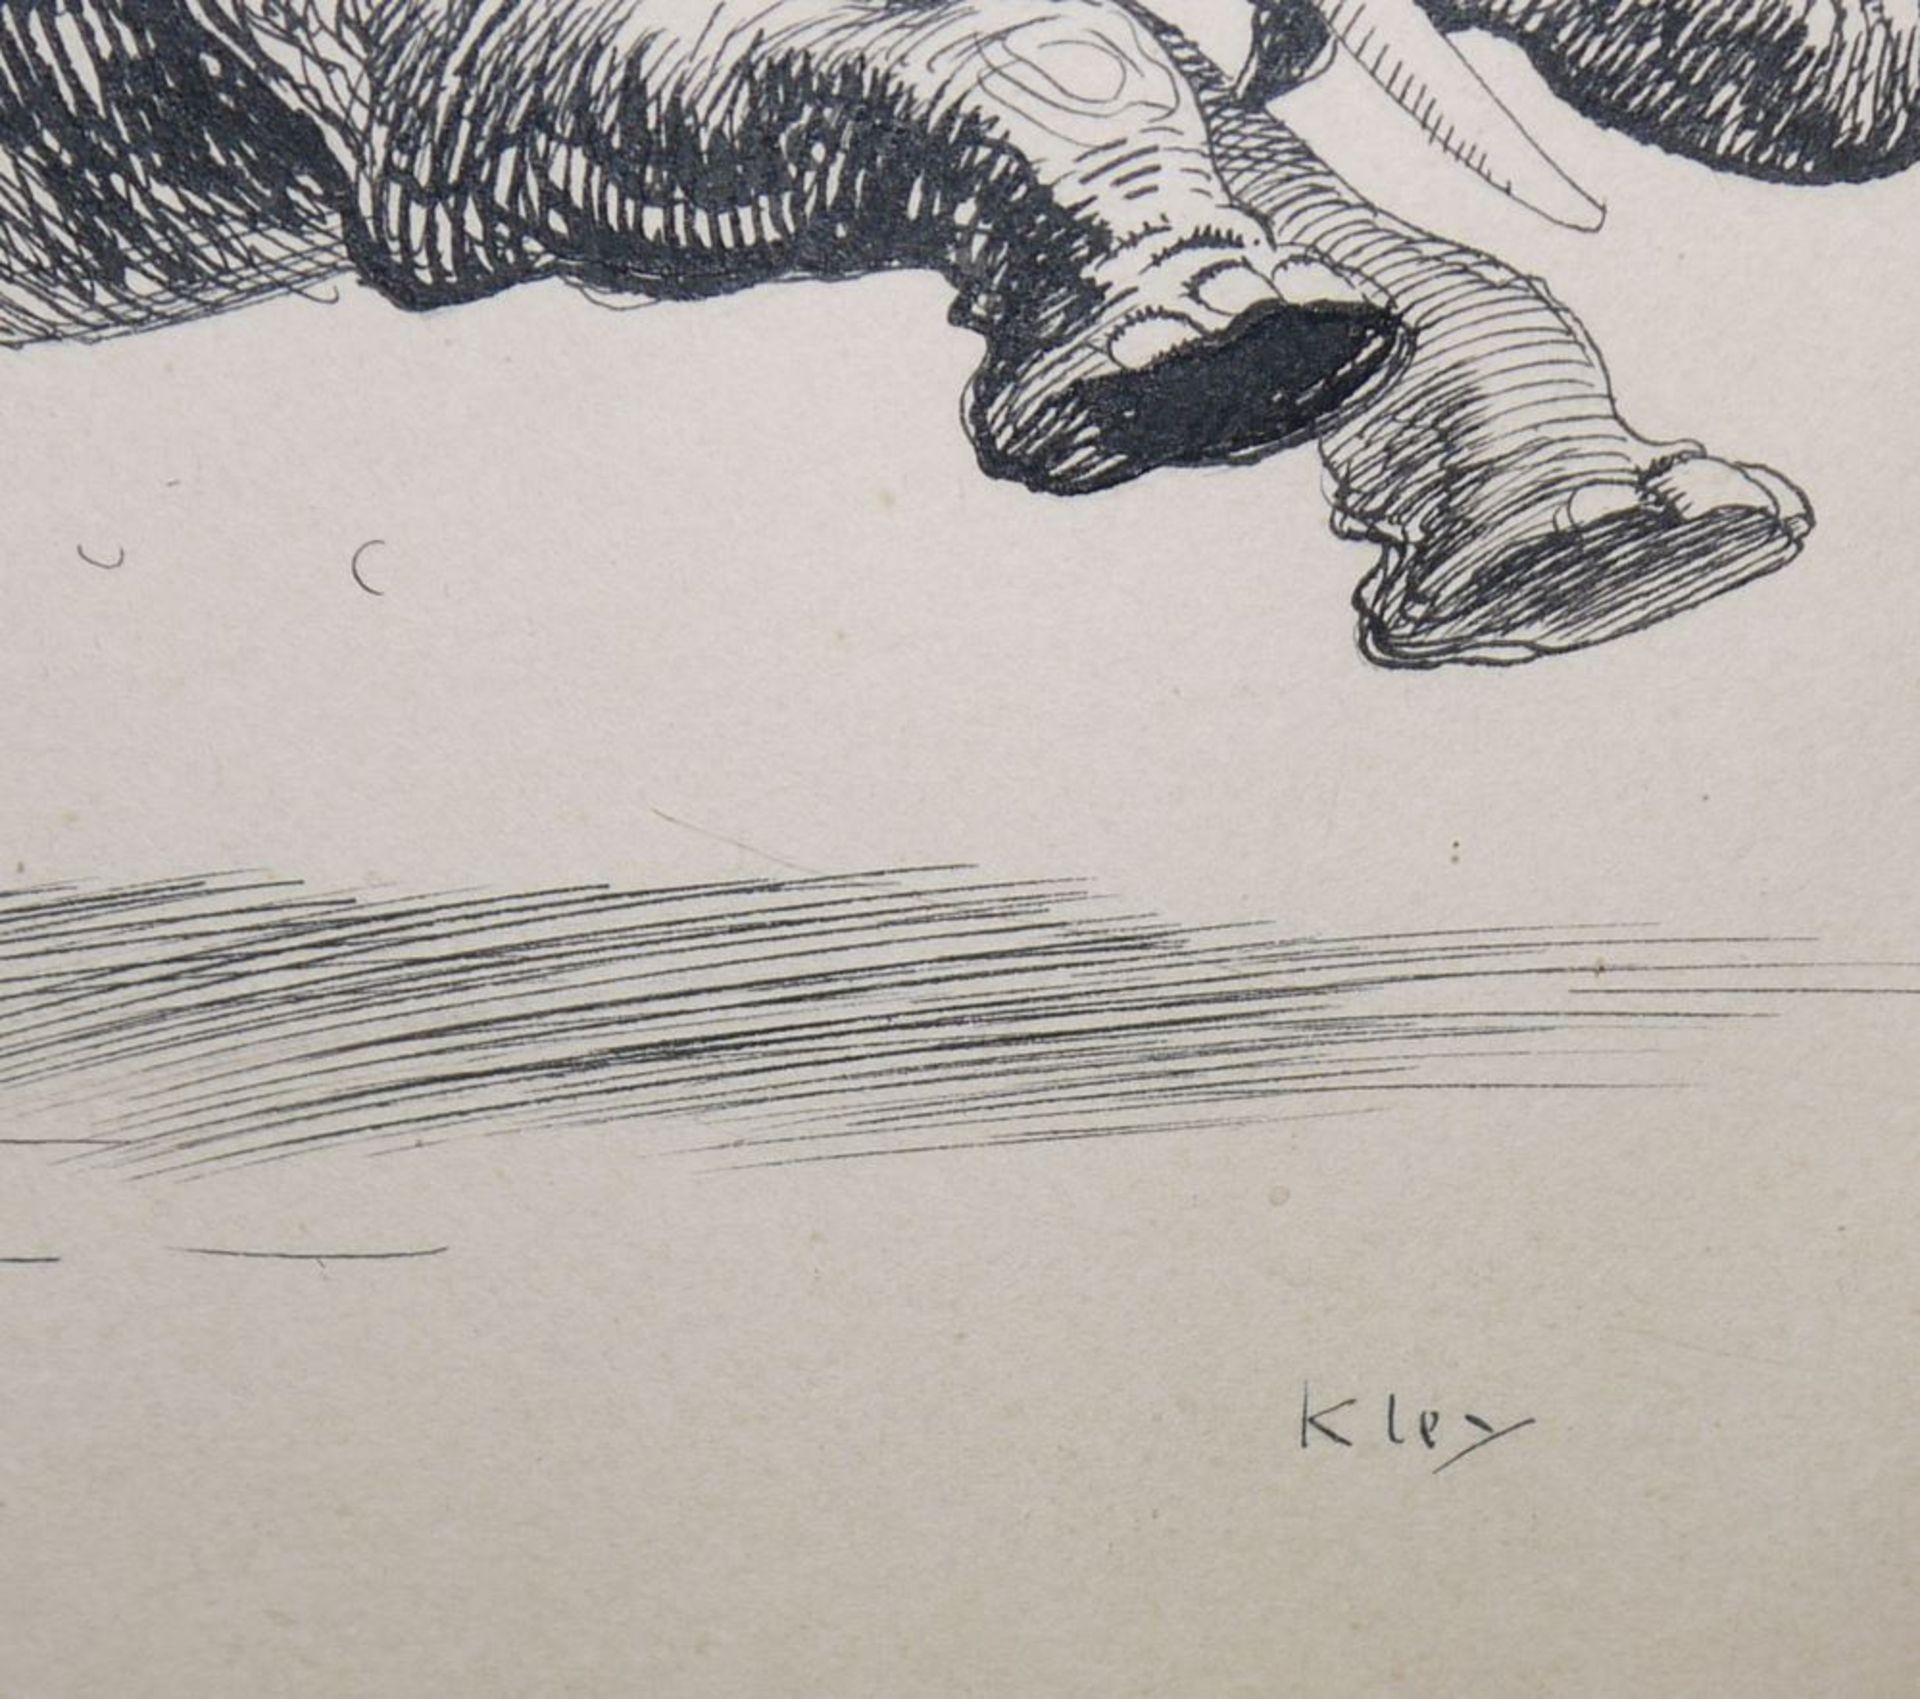 Heinrich Kley, "Skikjorning", humoristische Federzeichnung um 1900 - Image 2 of 2